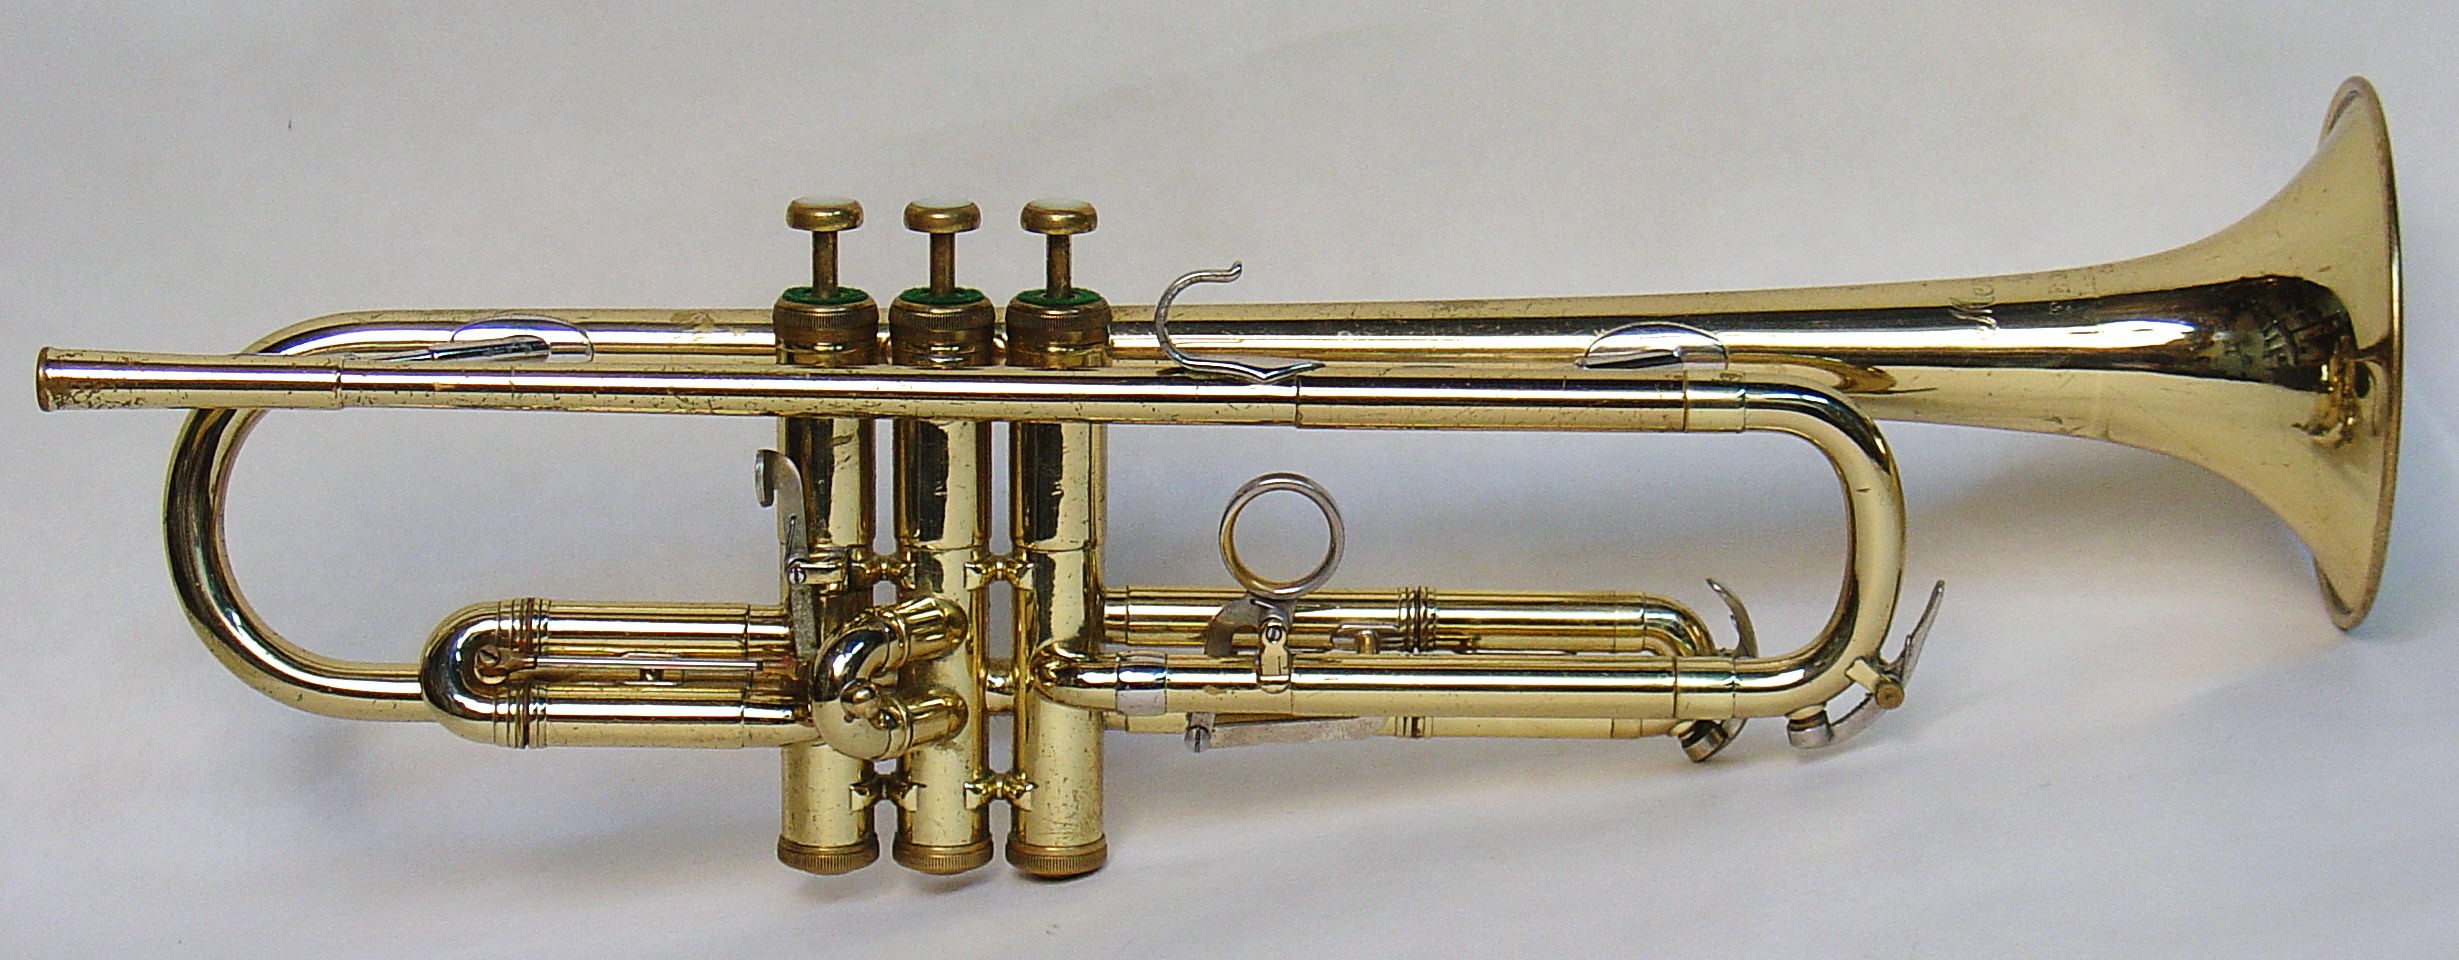 Prototype Mendez Model Trumpet